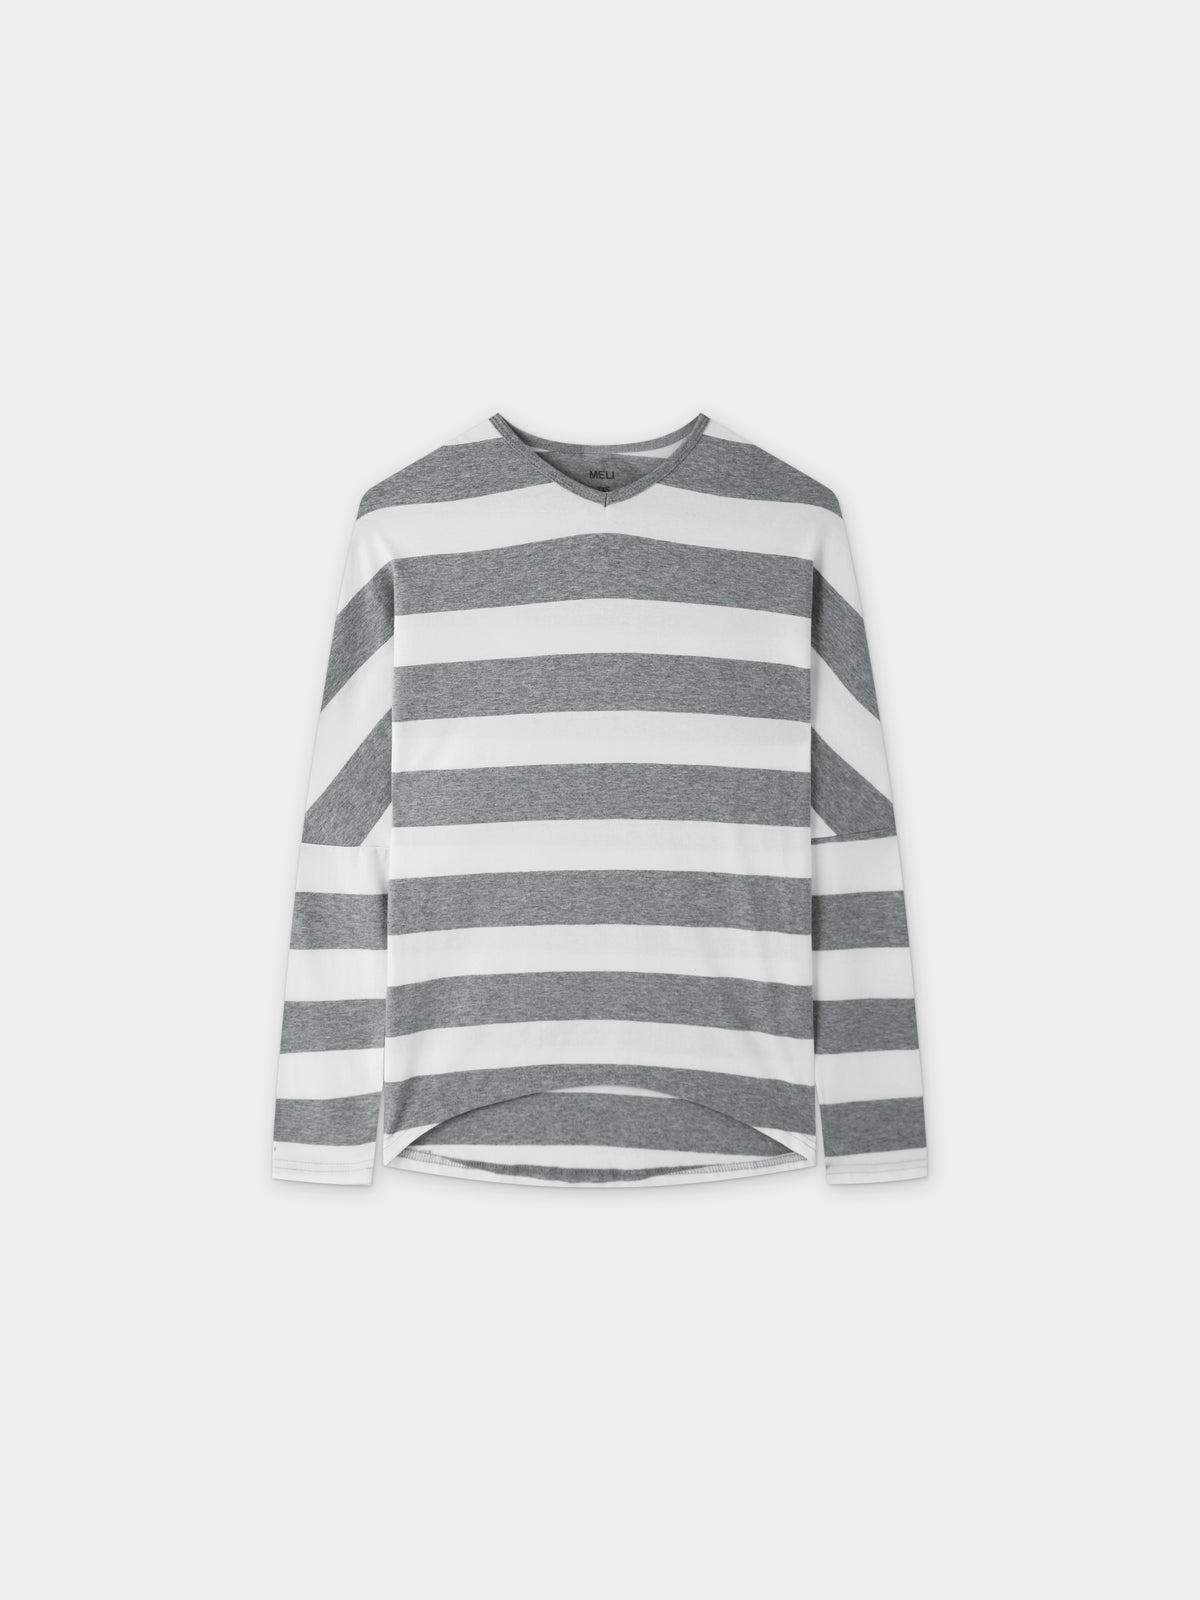 Striped Dolman V Neck-Grey/White